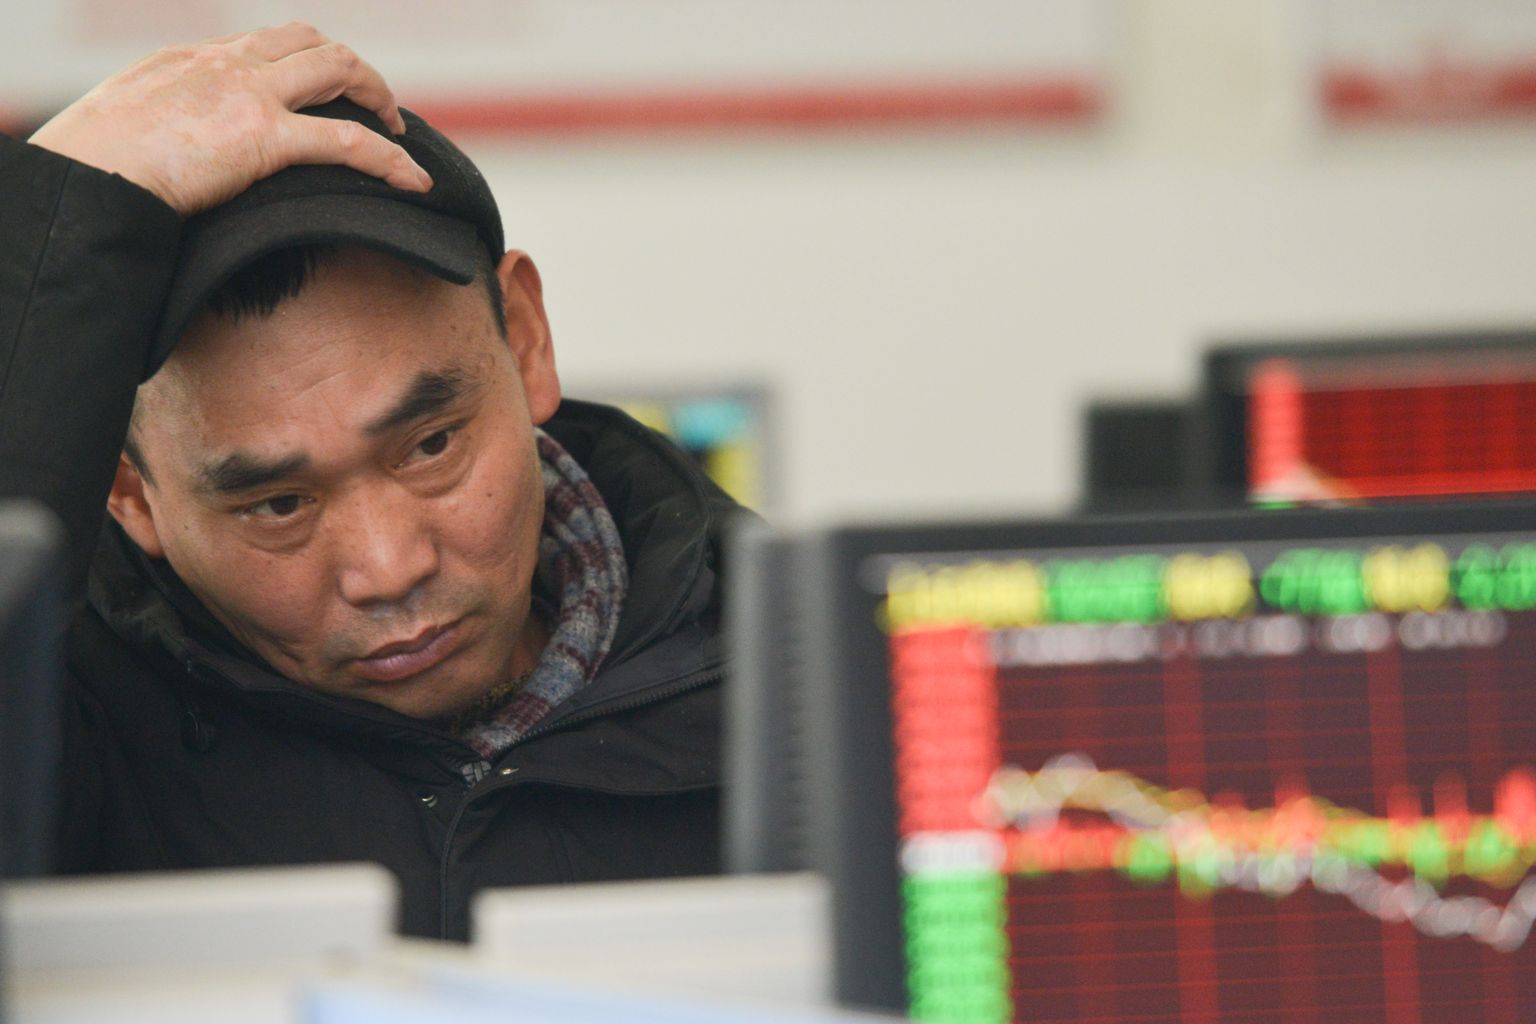 Hiina investorid peavad nuputama feng shui asemel välja muid aktsiatehingute tegemise indikaatoreid